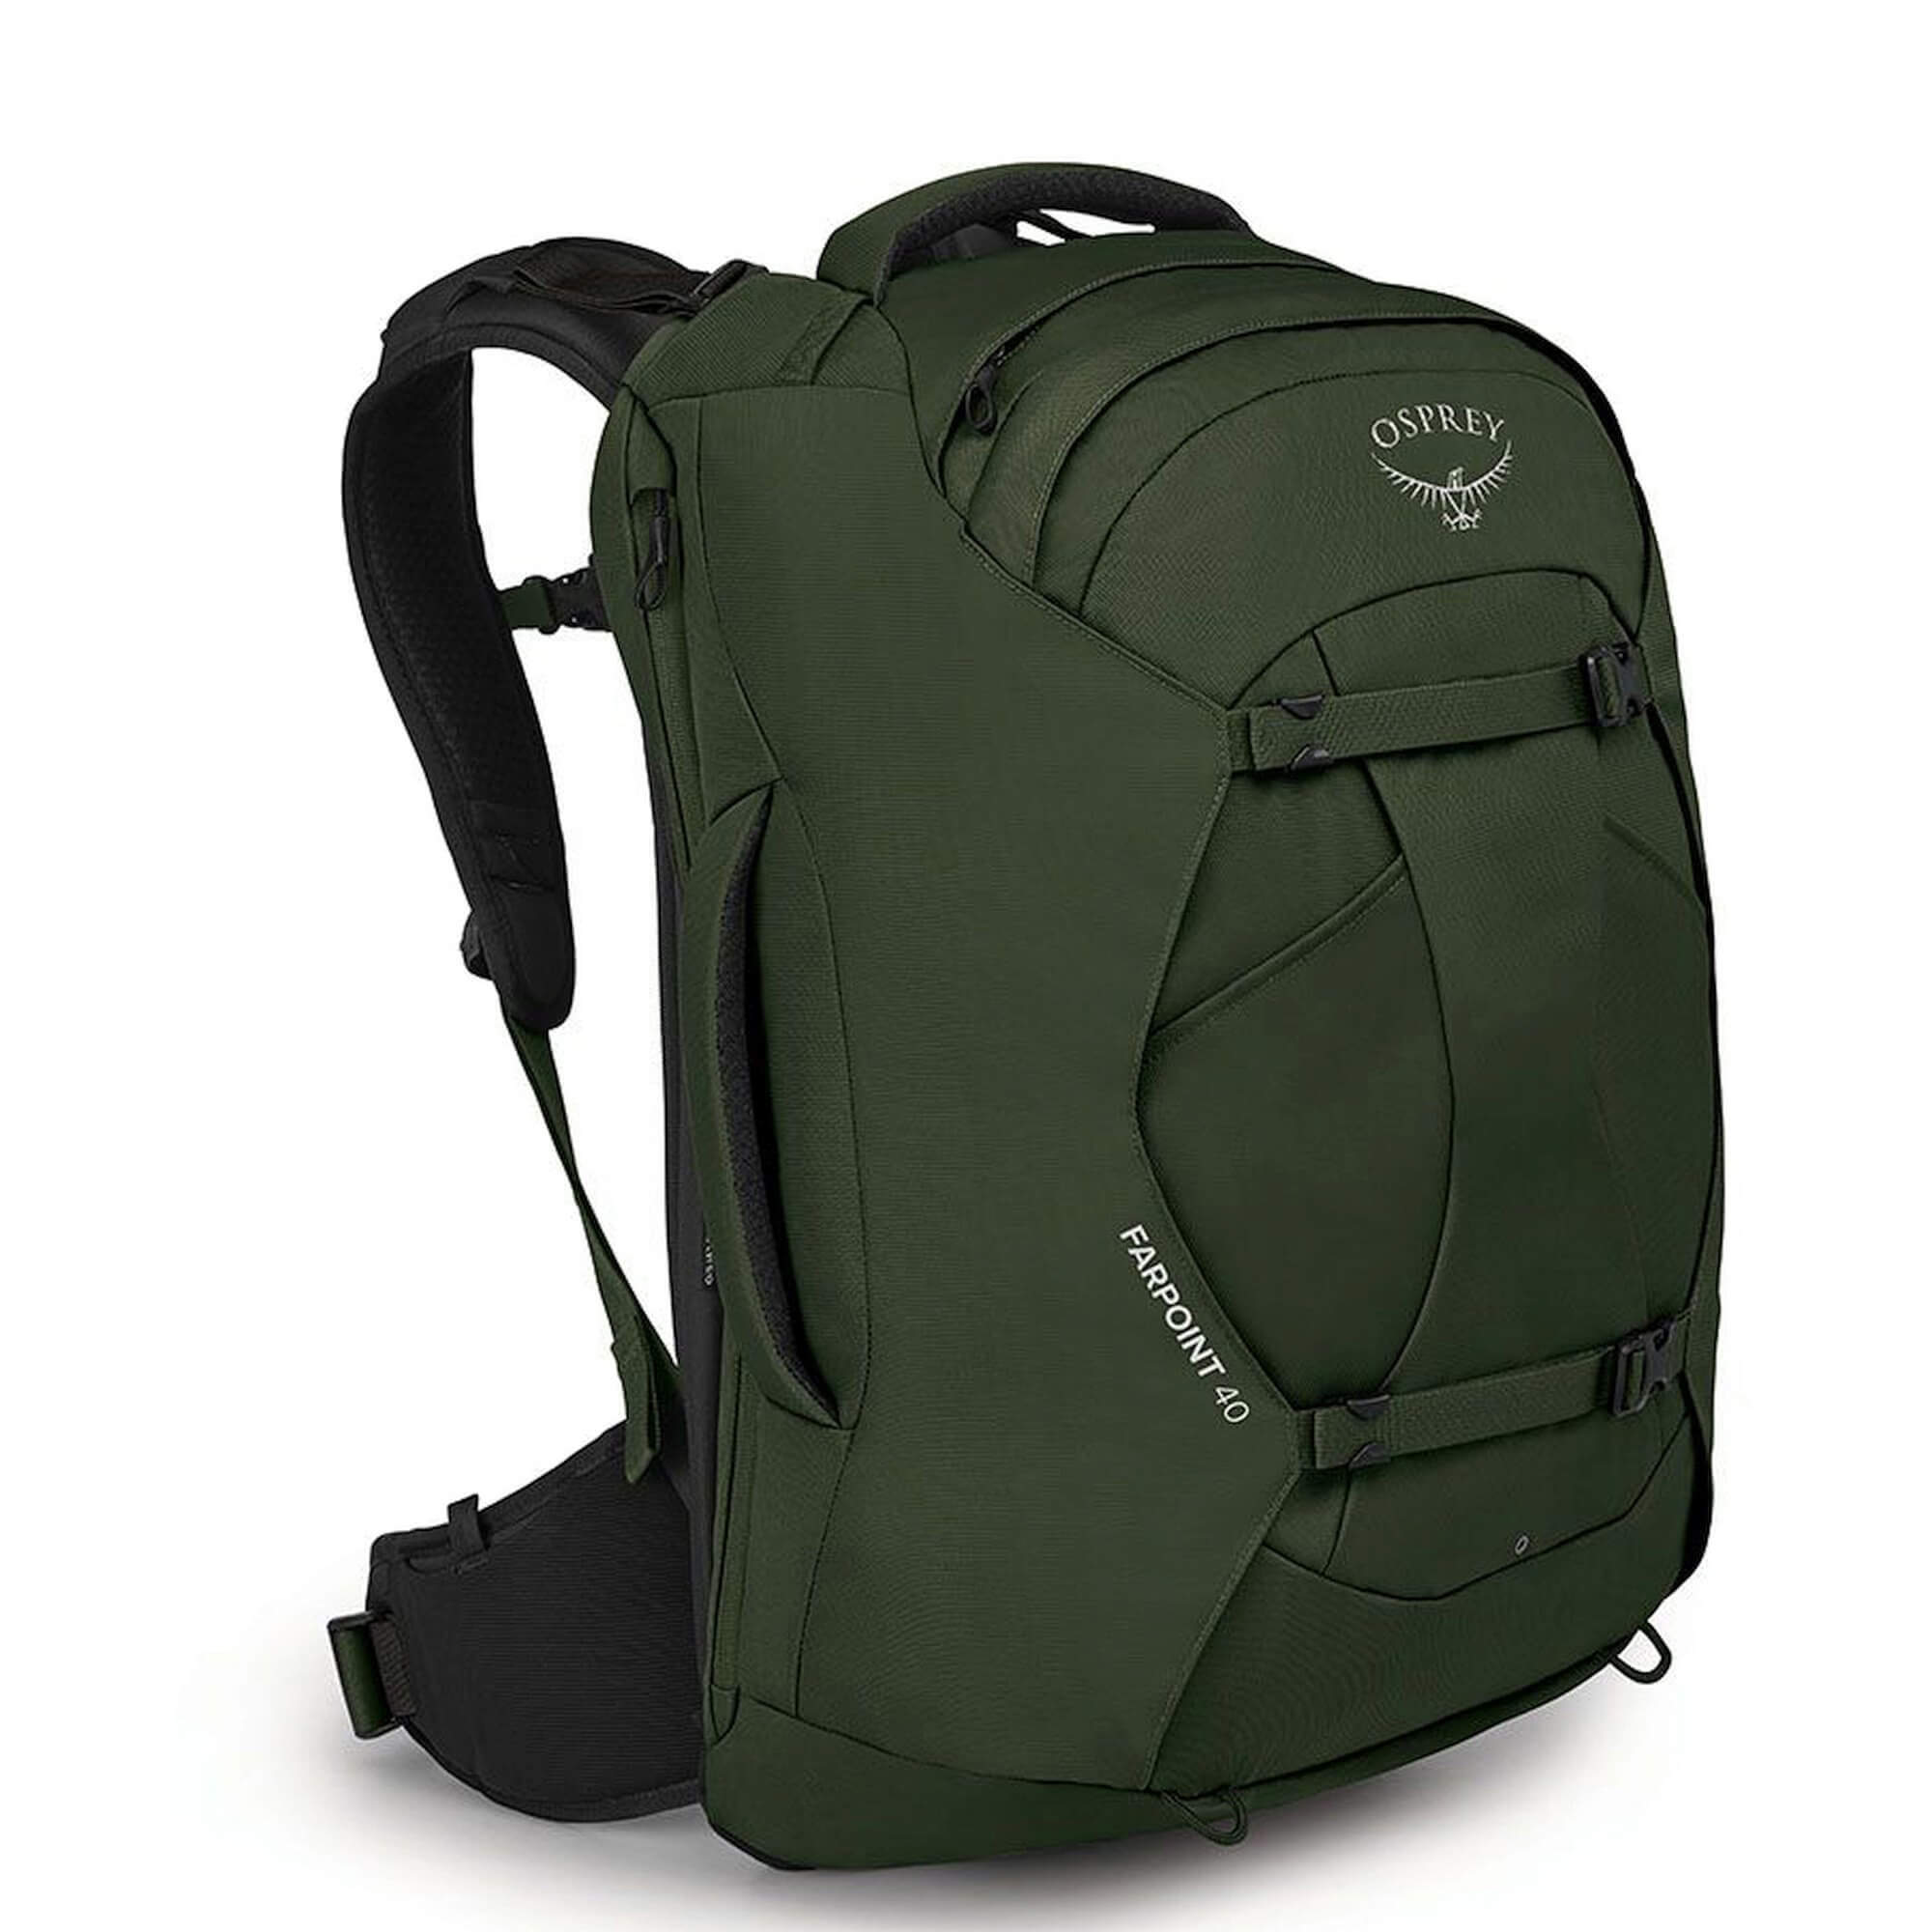 Рюкзак Osprey Farpoint 40 Reise 55 cm, цвет gopher green рюкзак osprey farpoint 55 reise 65 cm цвет tunnel vision grey